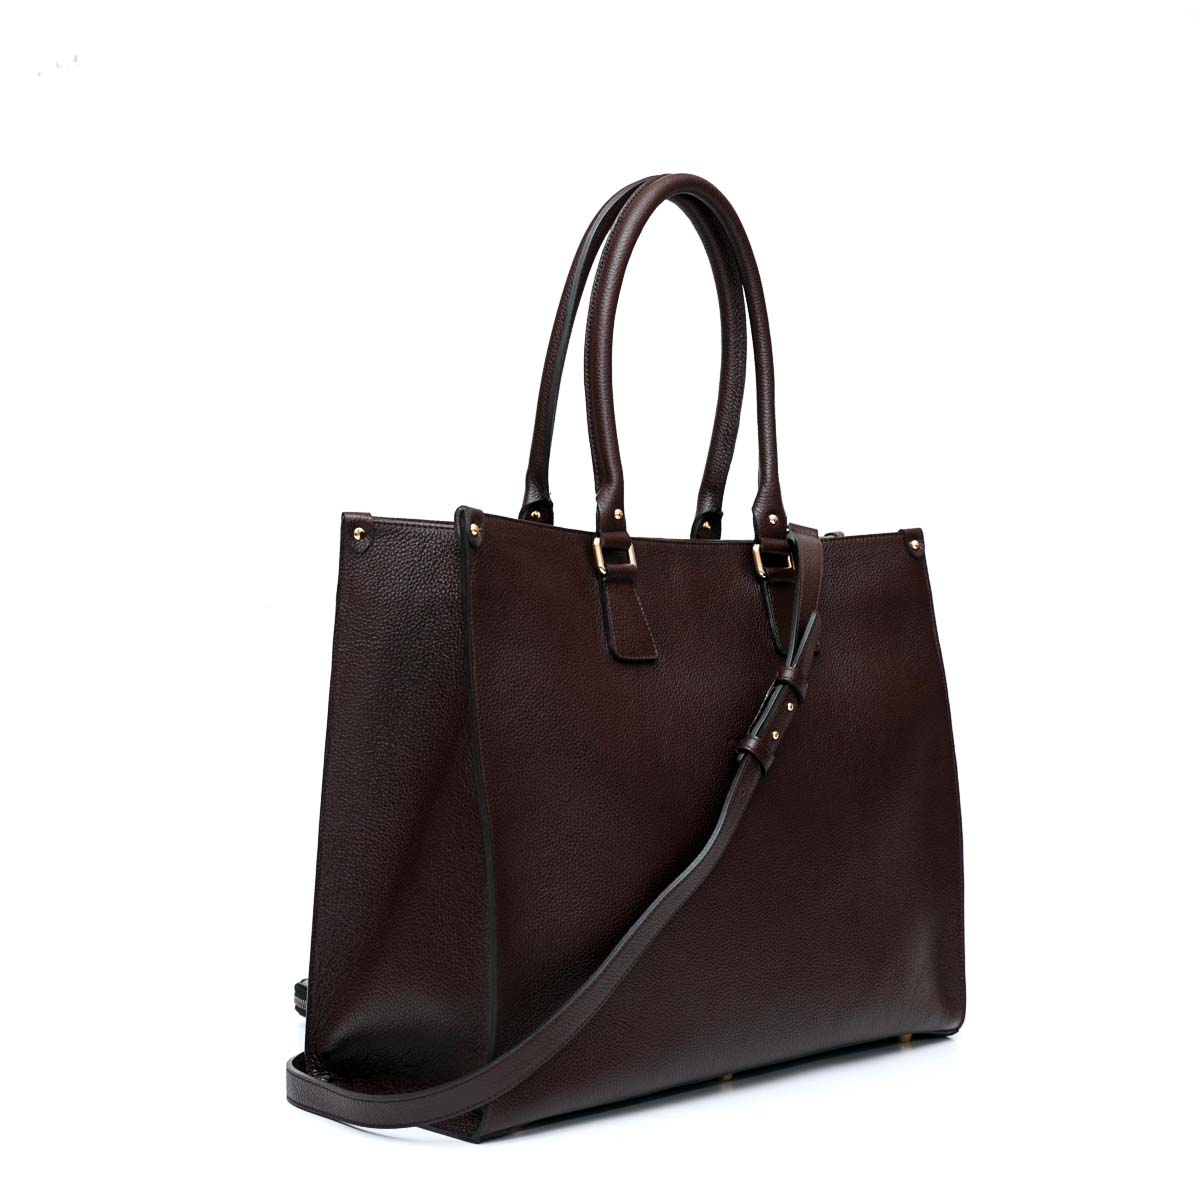 Lady bag borsa da donna a spalla in pelle marrone scuro con doppi manici più tracolla fatta da Pianigiani Bags